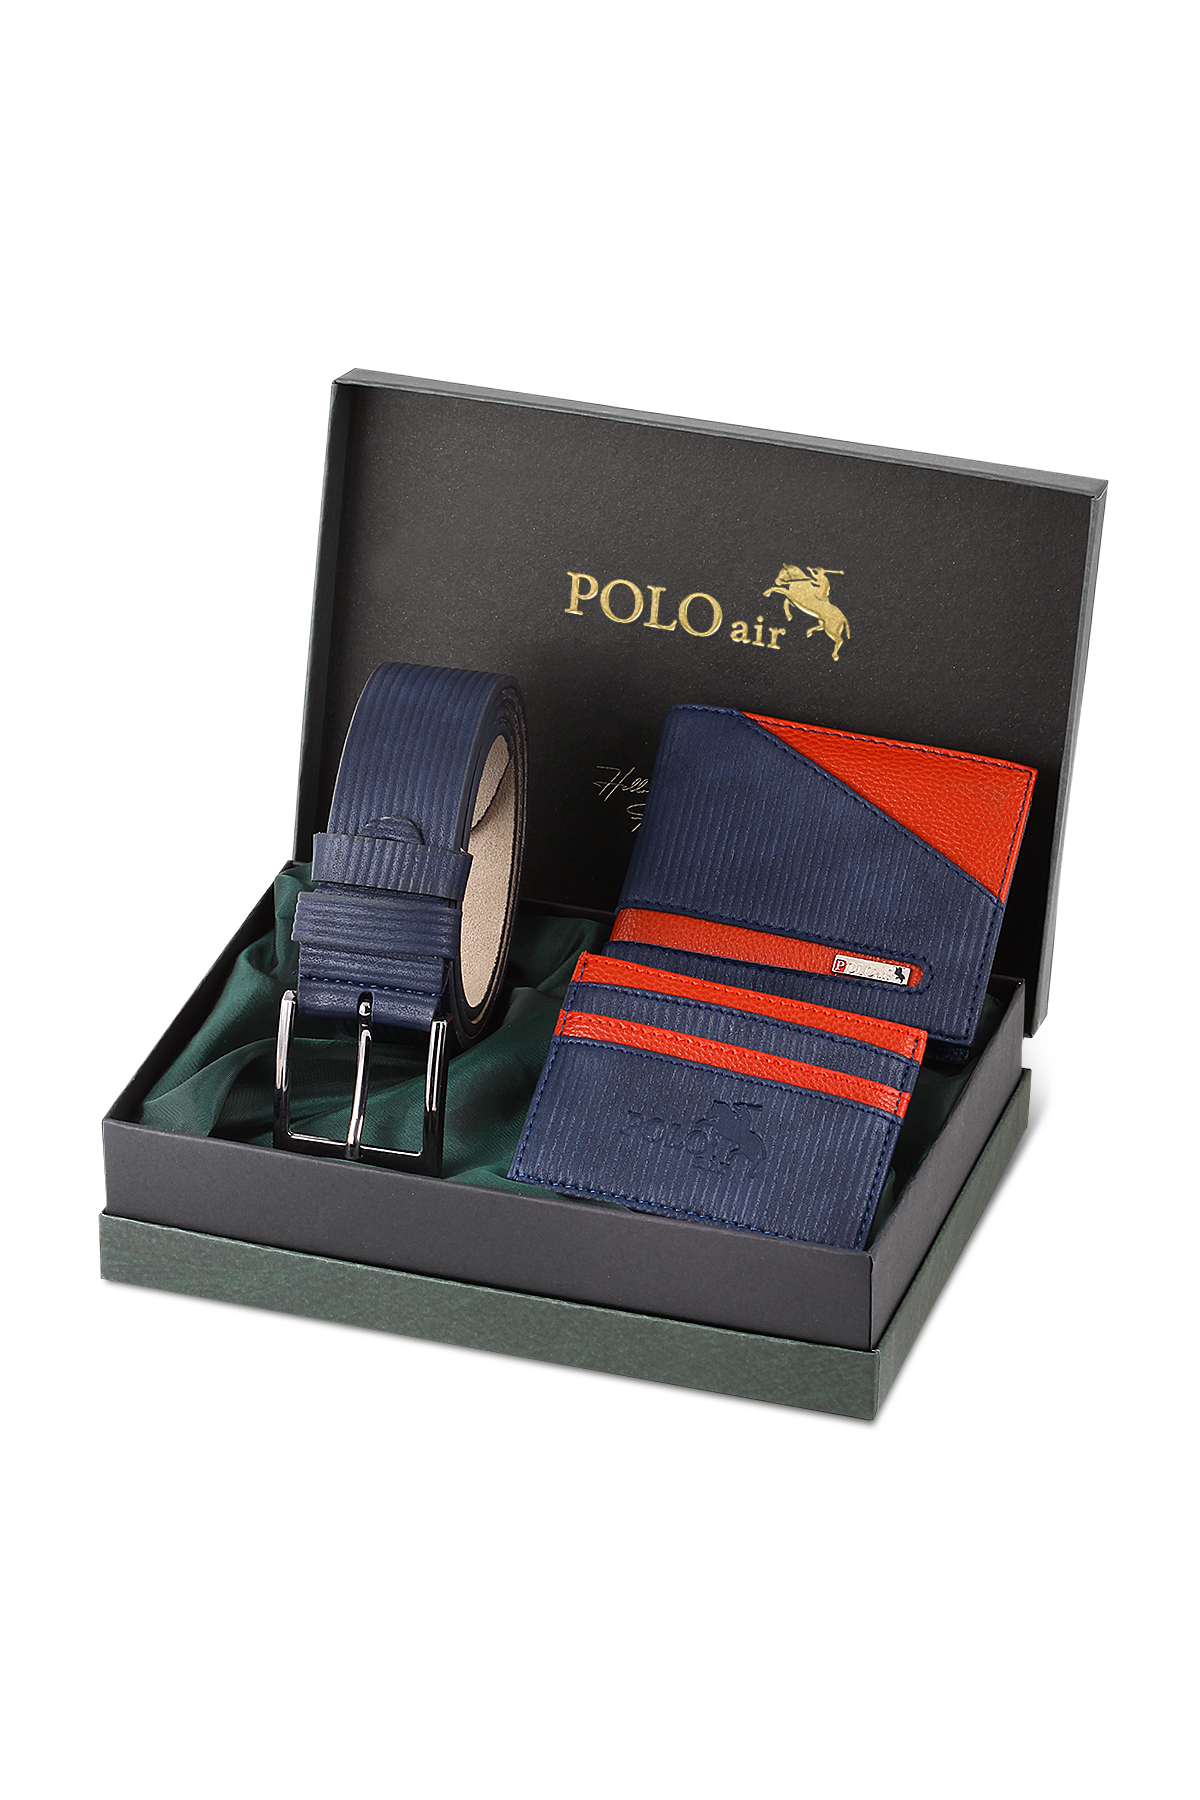 Polo Air Erkek Kişiye Özel Hediye Paketli Kapıda Ödeme  M-15-L